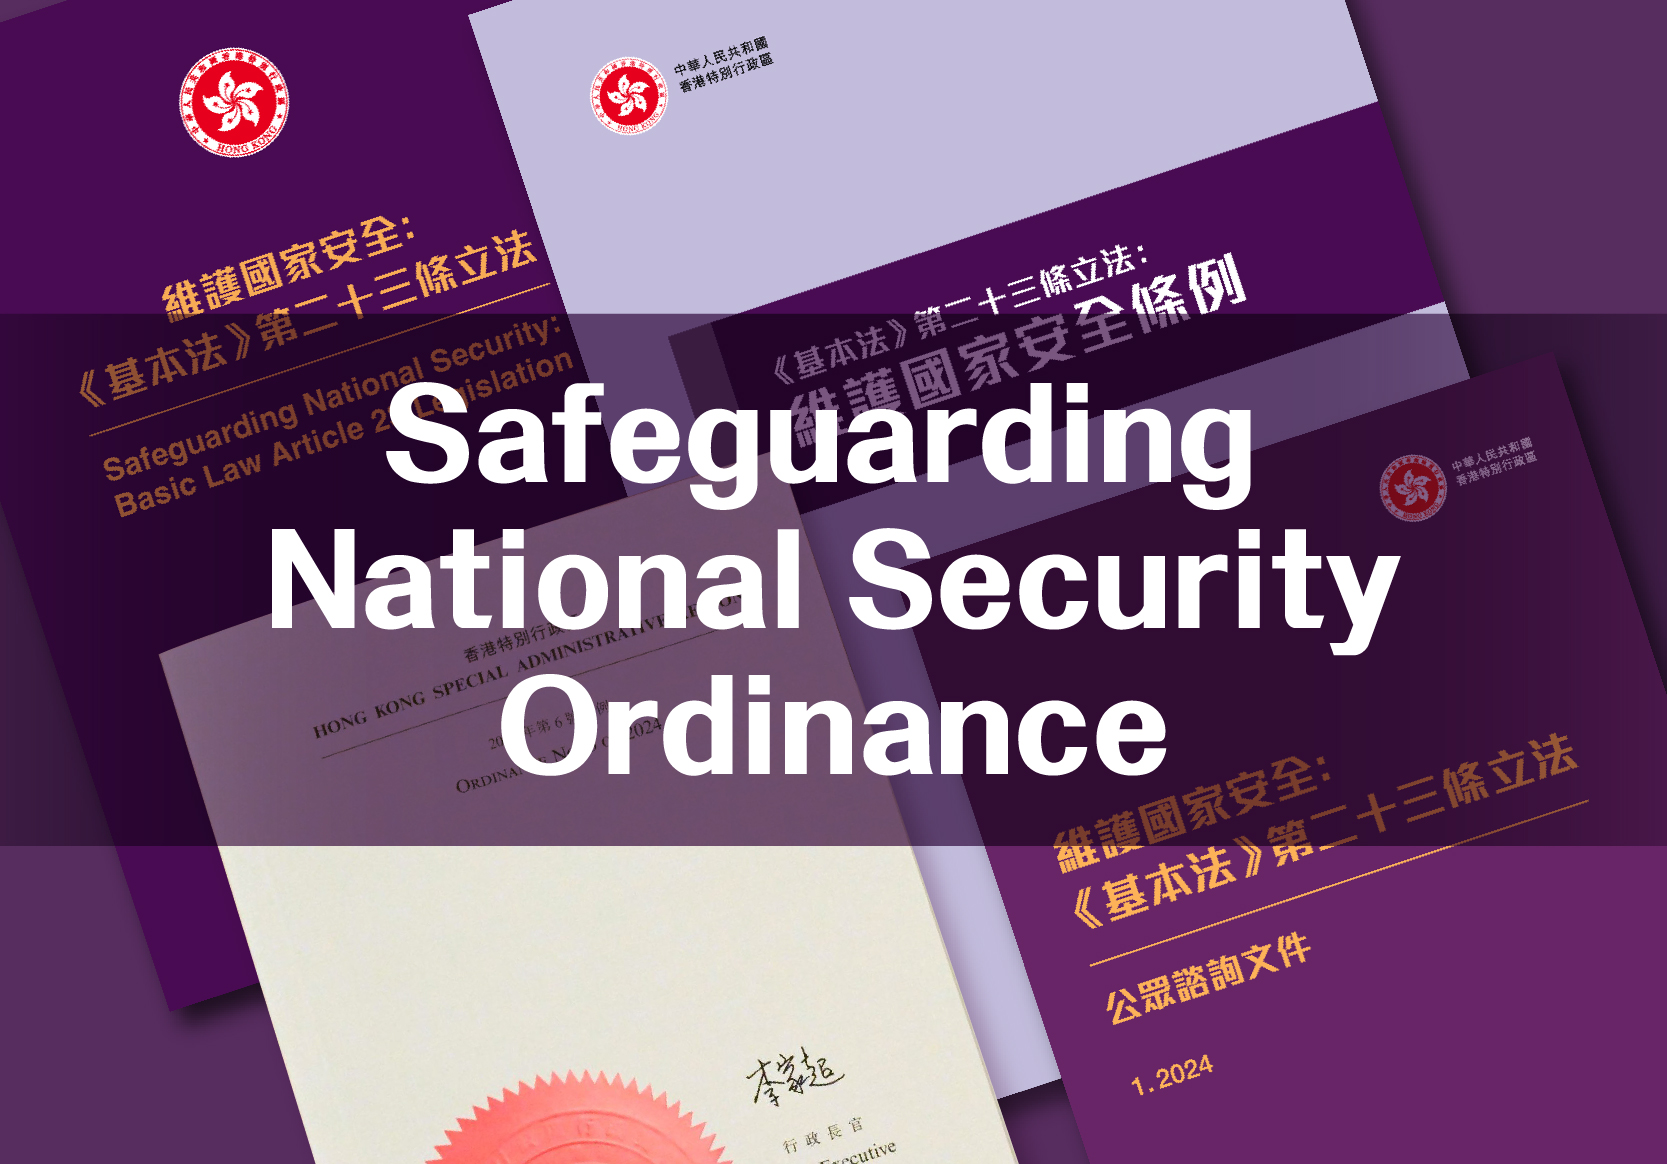 Safeguarding National Security Ordinance